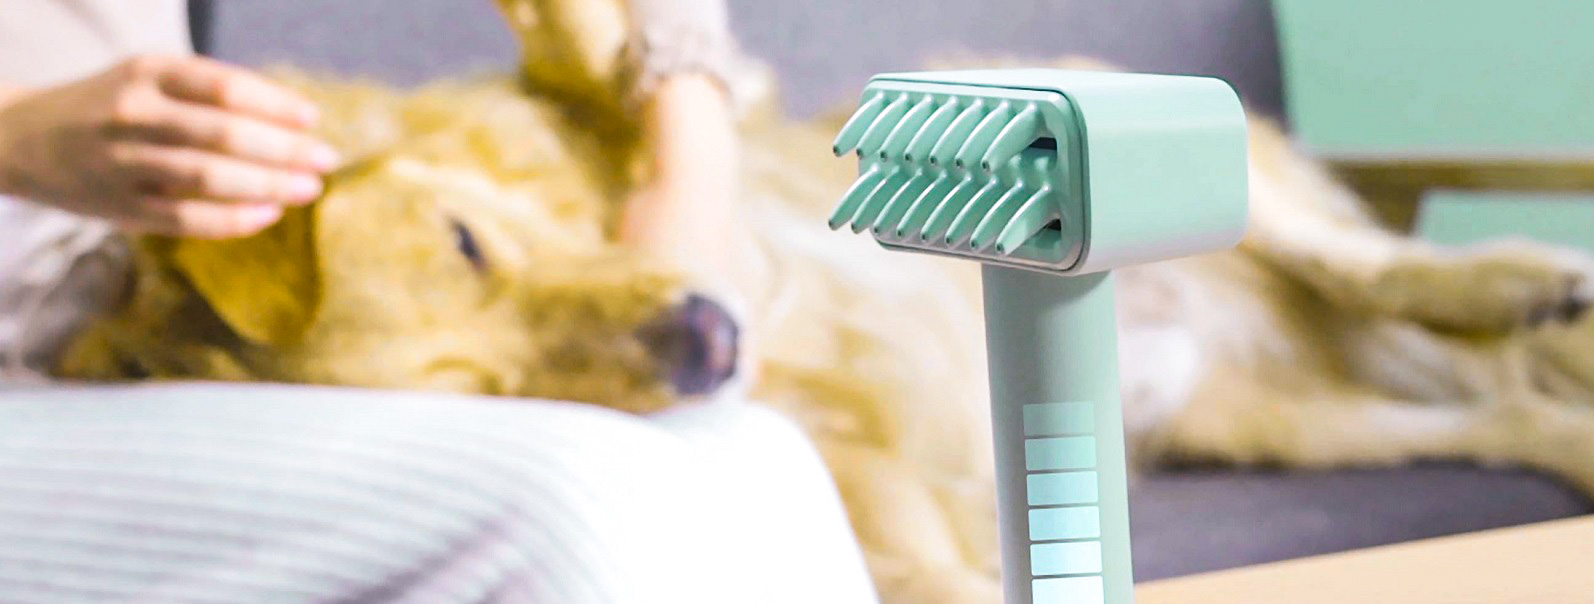 Kcomb - перша у світі електрощітка для догляду за домашніми тваринами